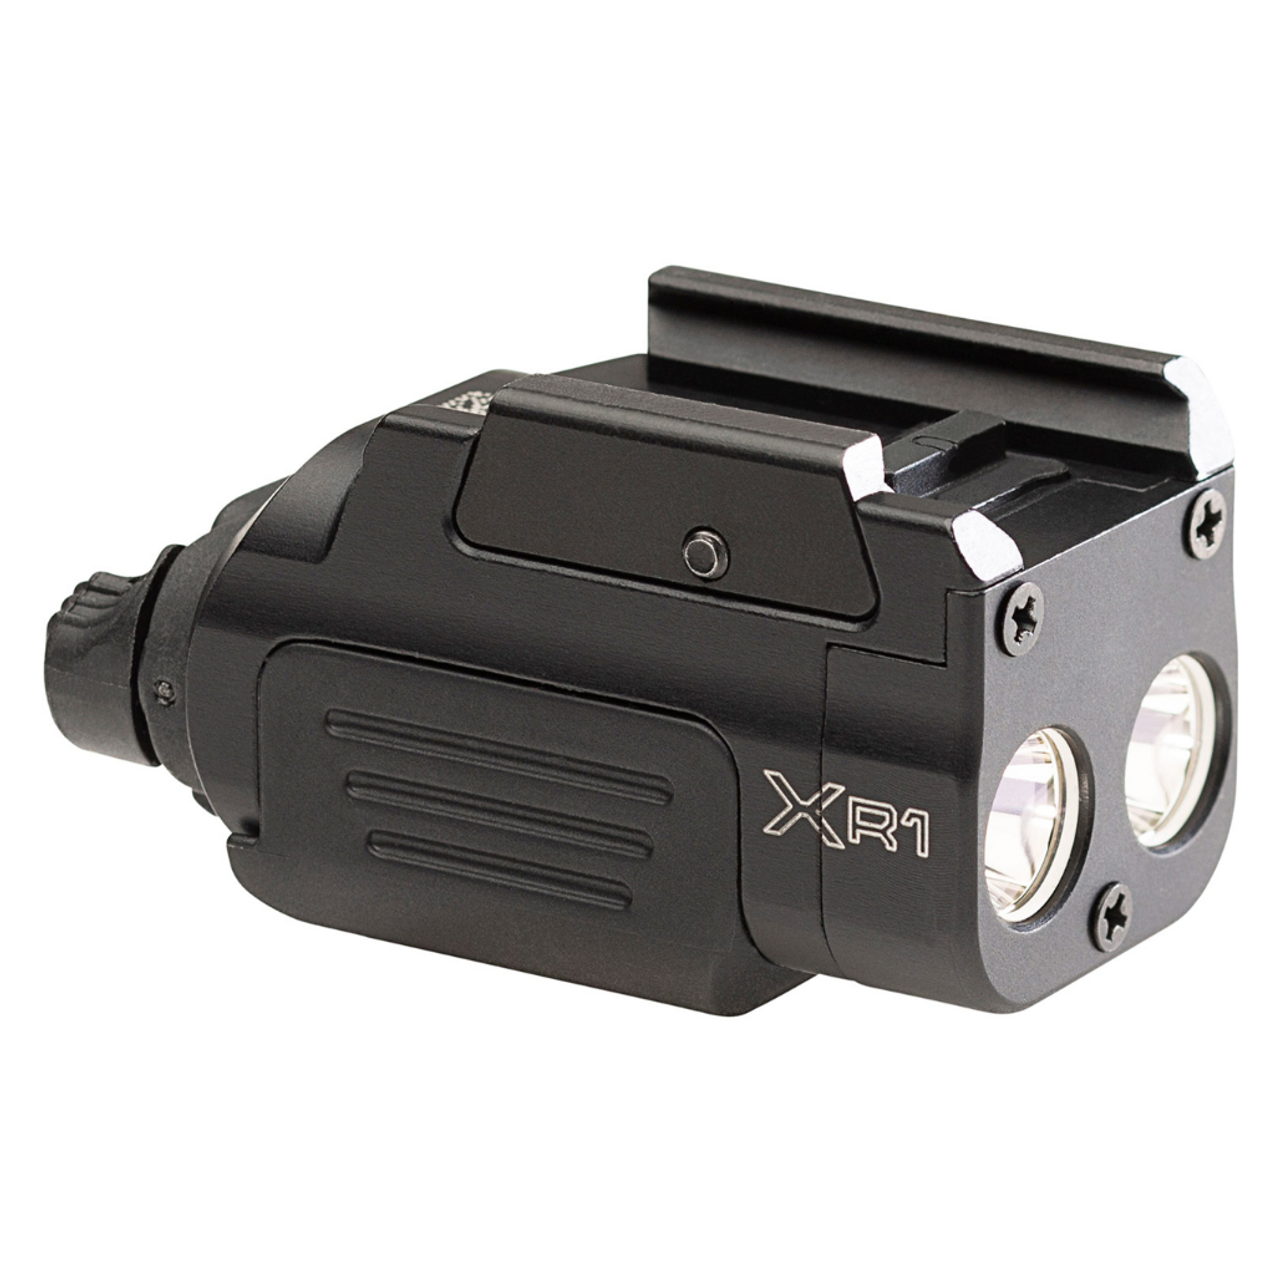 XR1-A Compact Rechargeable Handgun Light